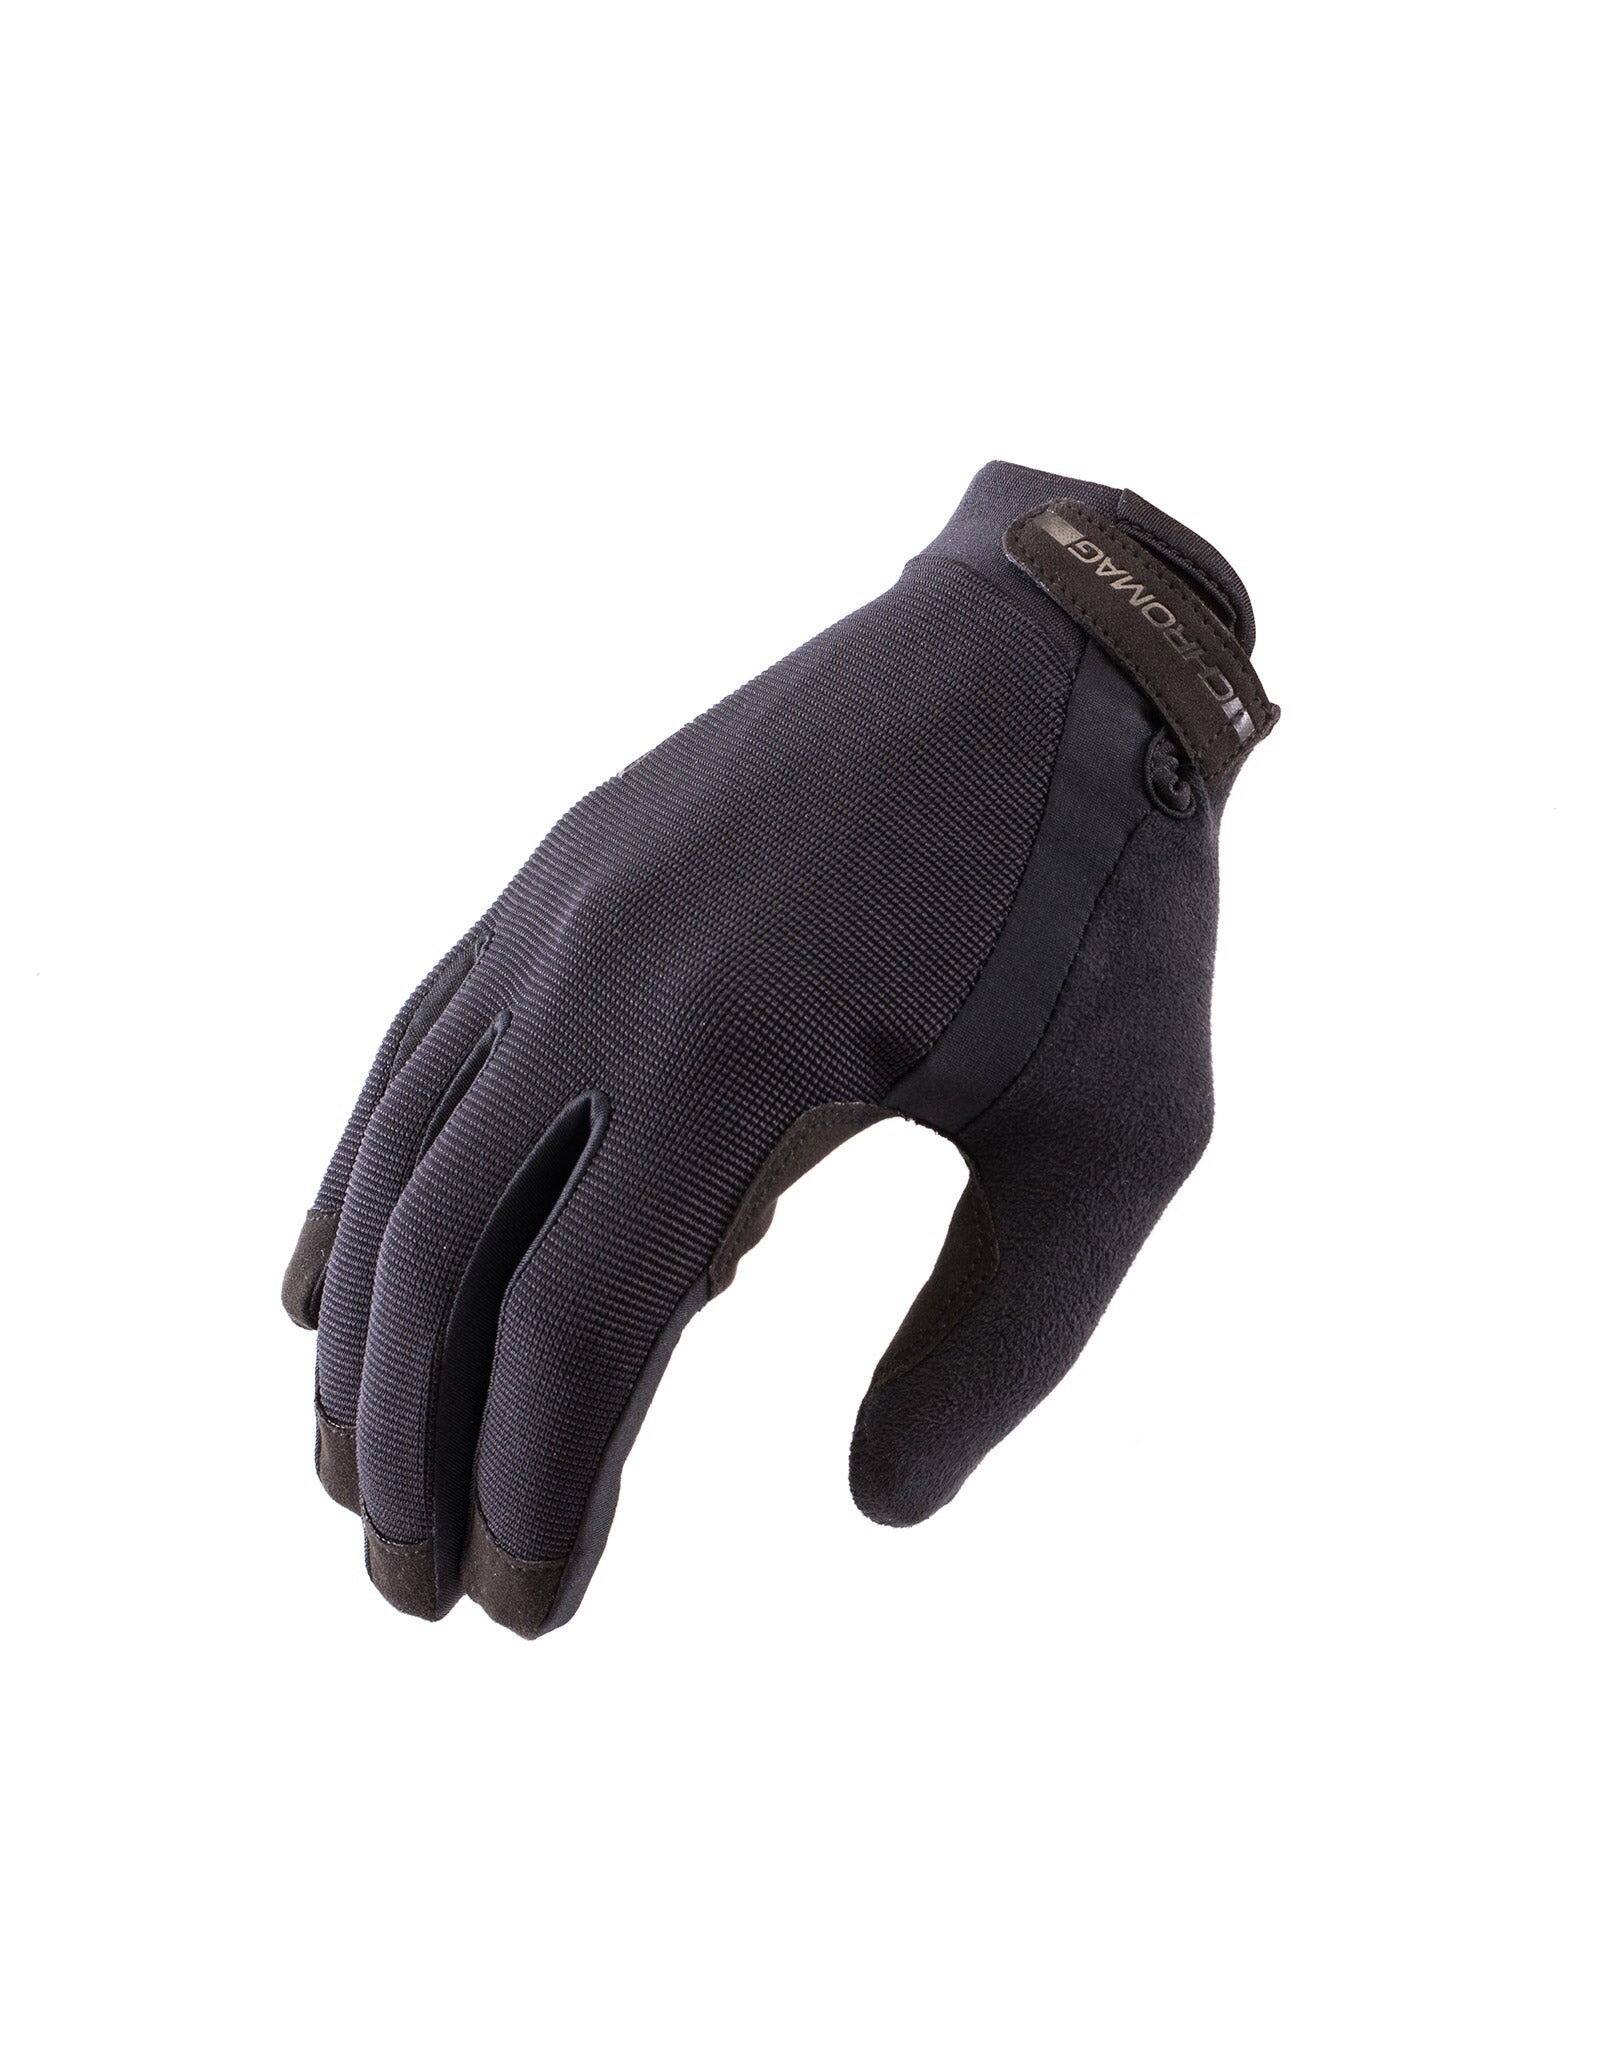 Chromag Tact MTB Gloves